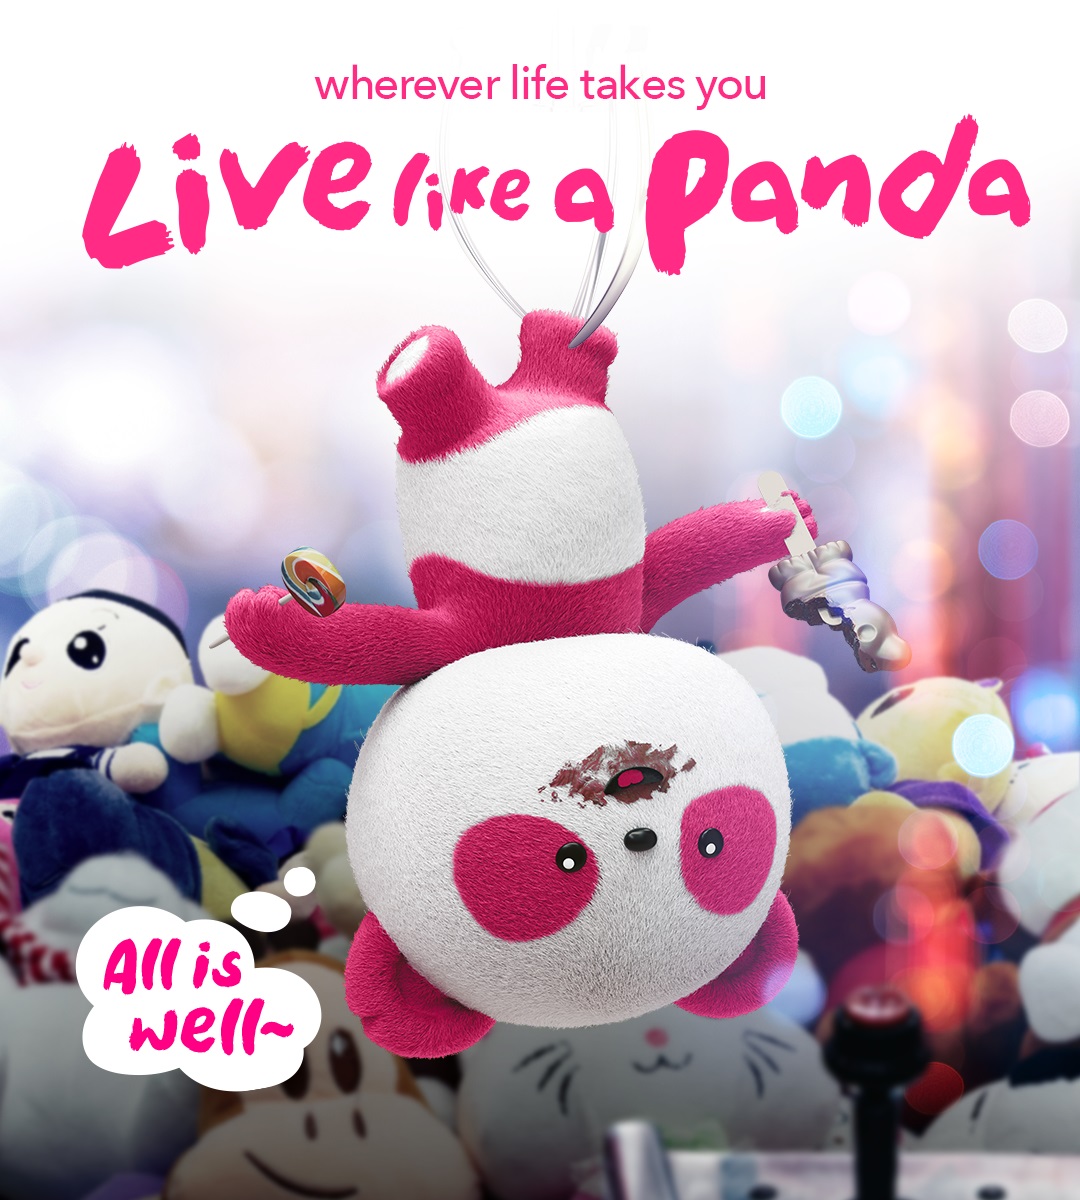 Live-like-a-panda.jpg